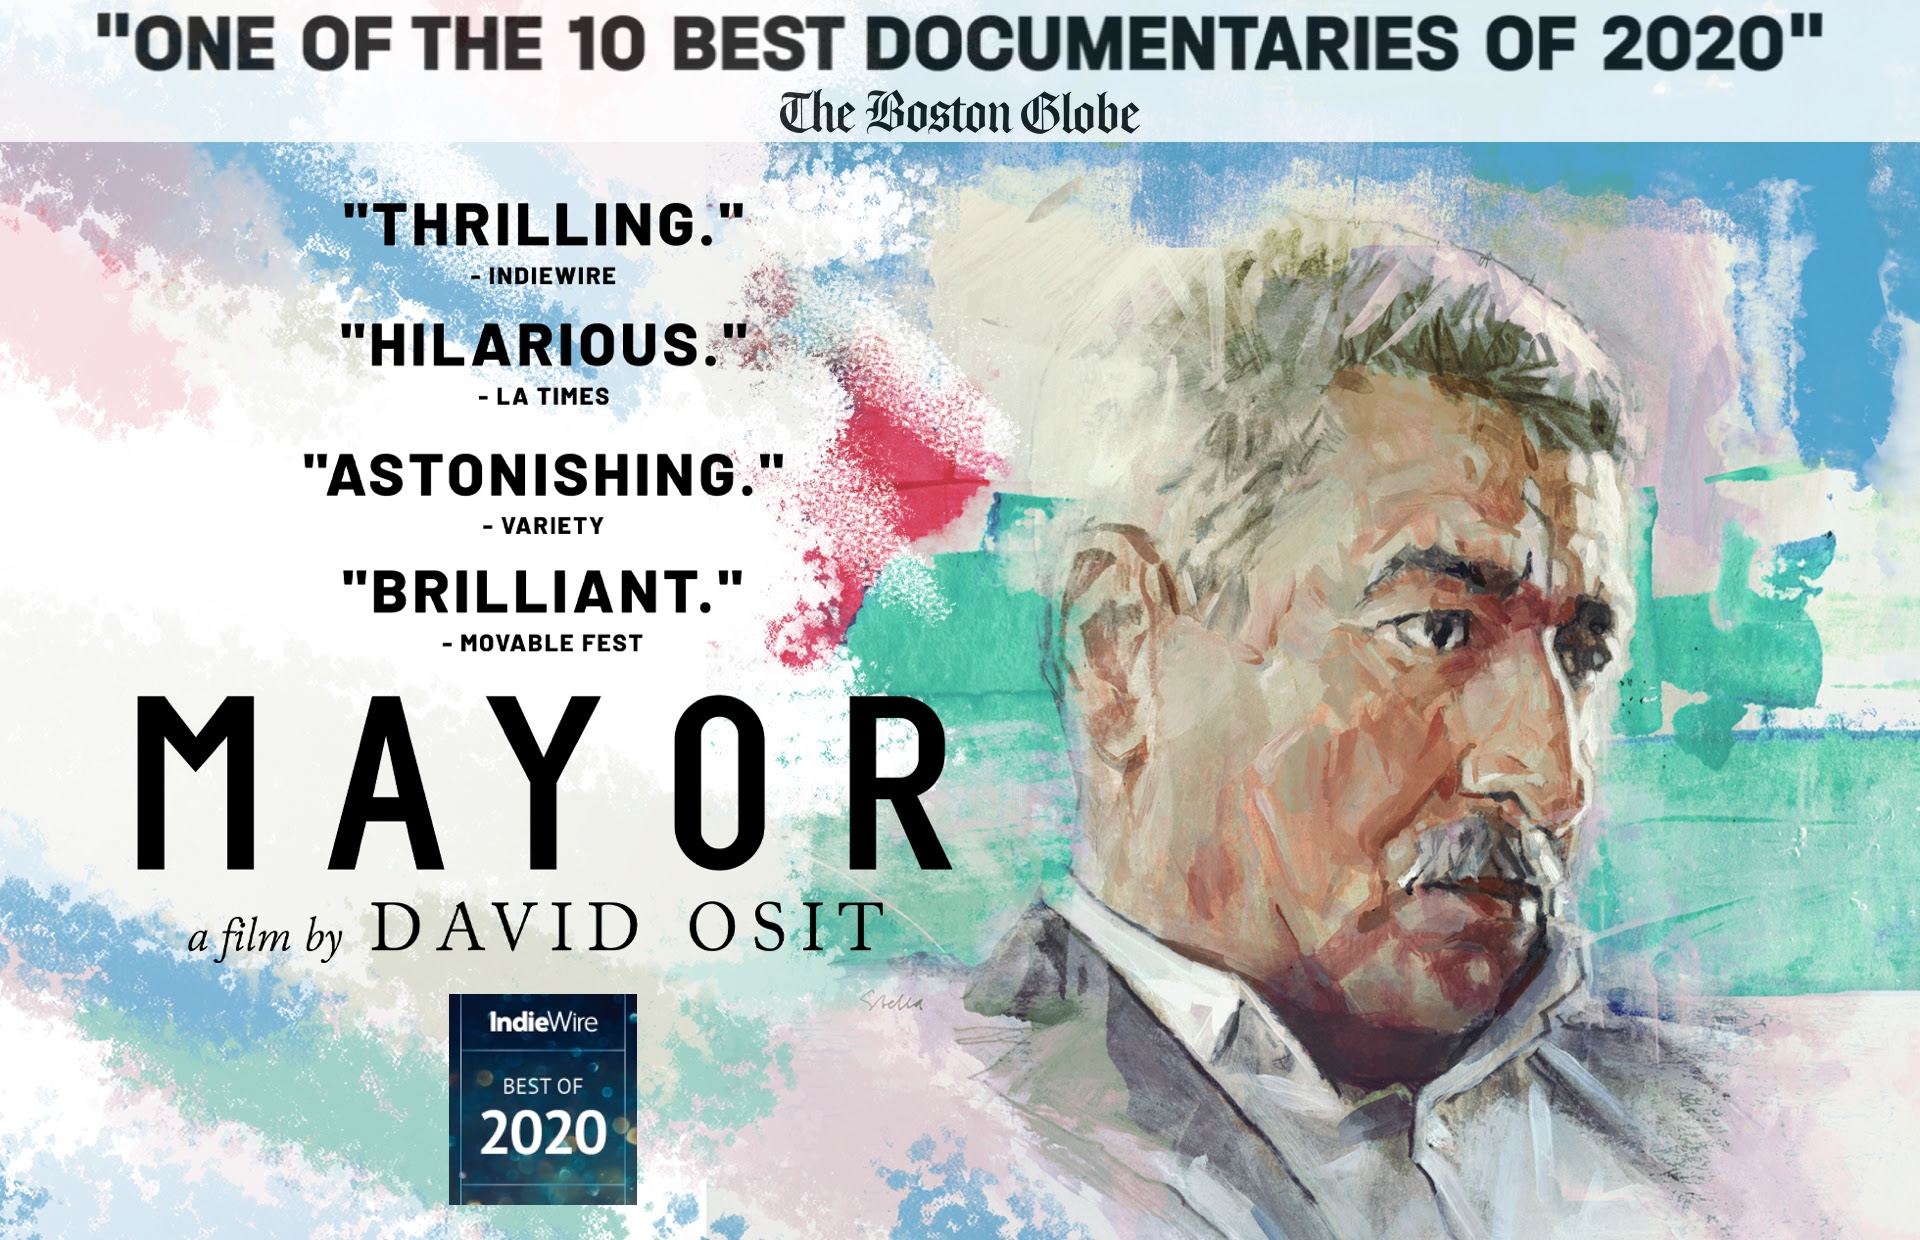 MAYOR - The Ryder - 2021de-izlenmesi-gereken-en-iyi-10-film